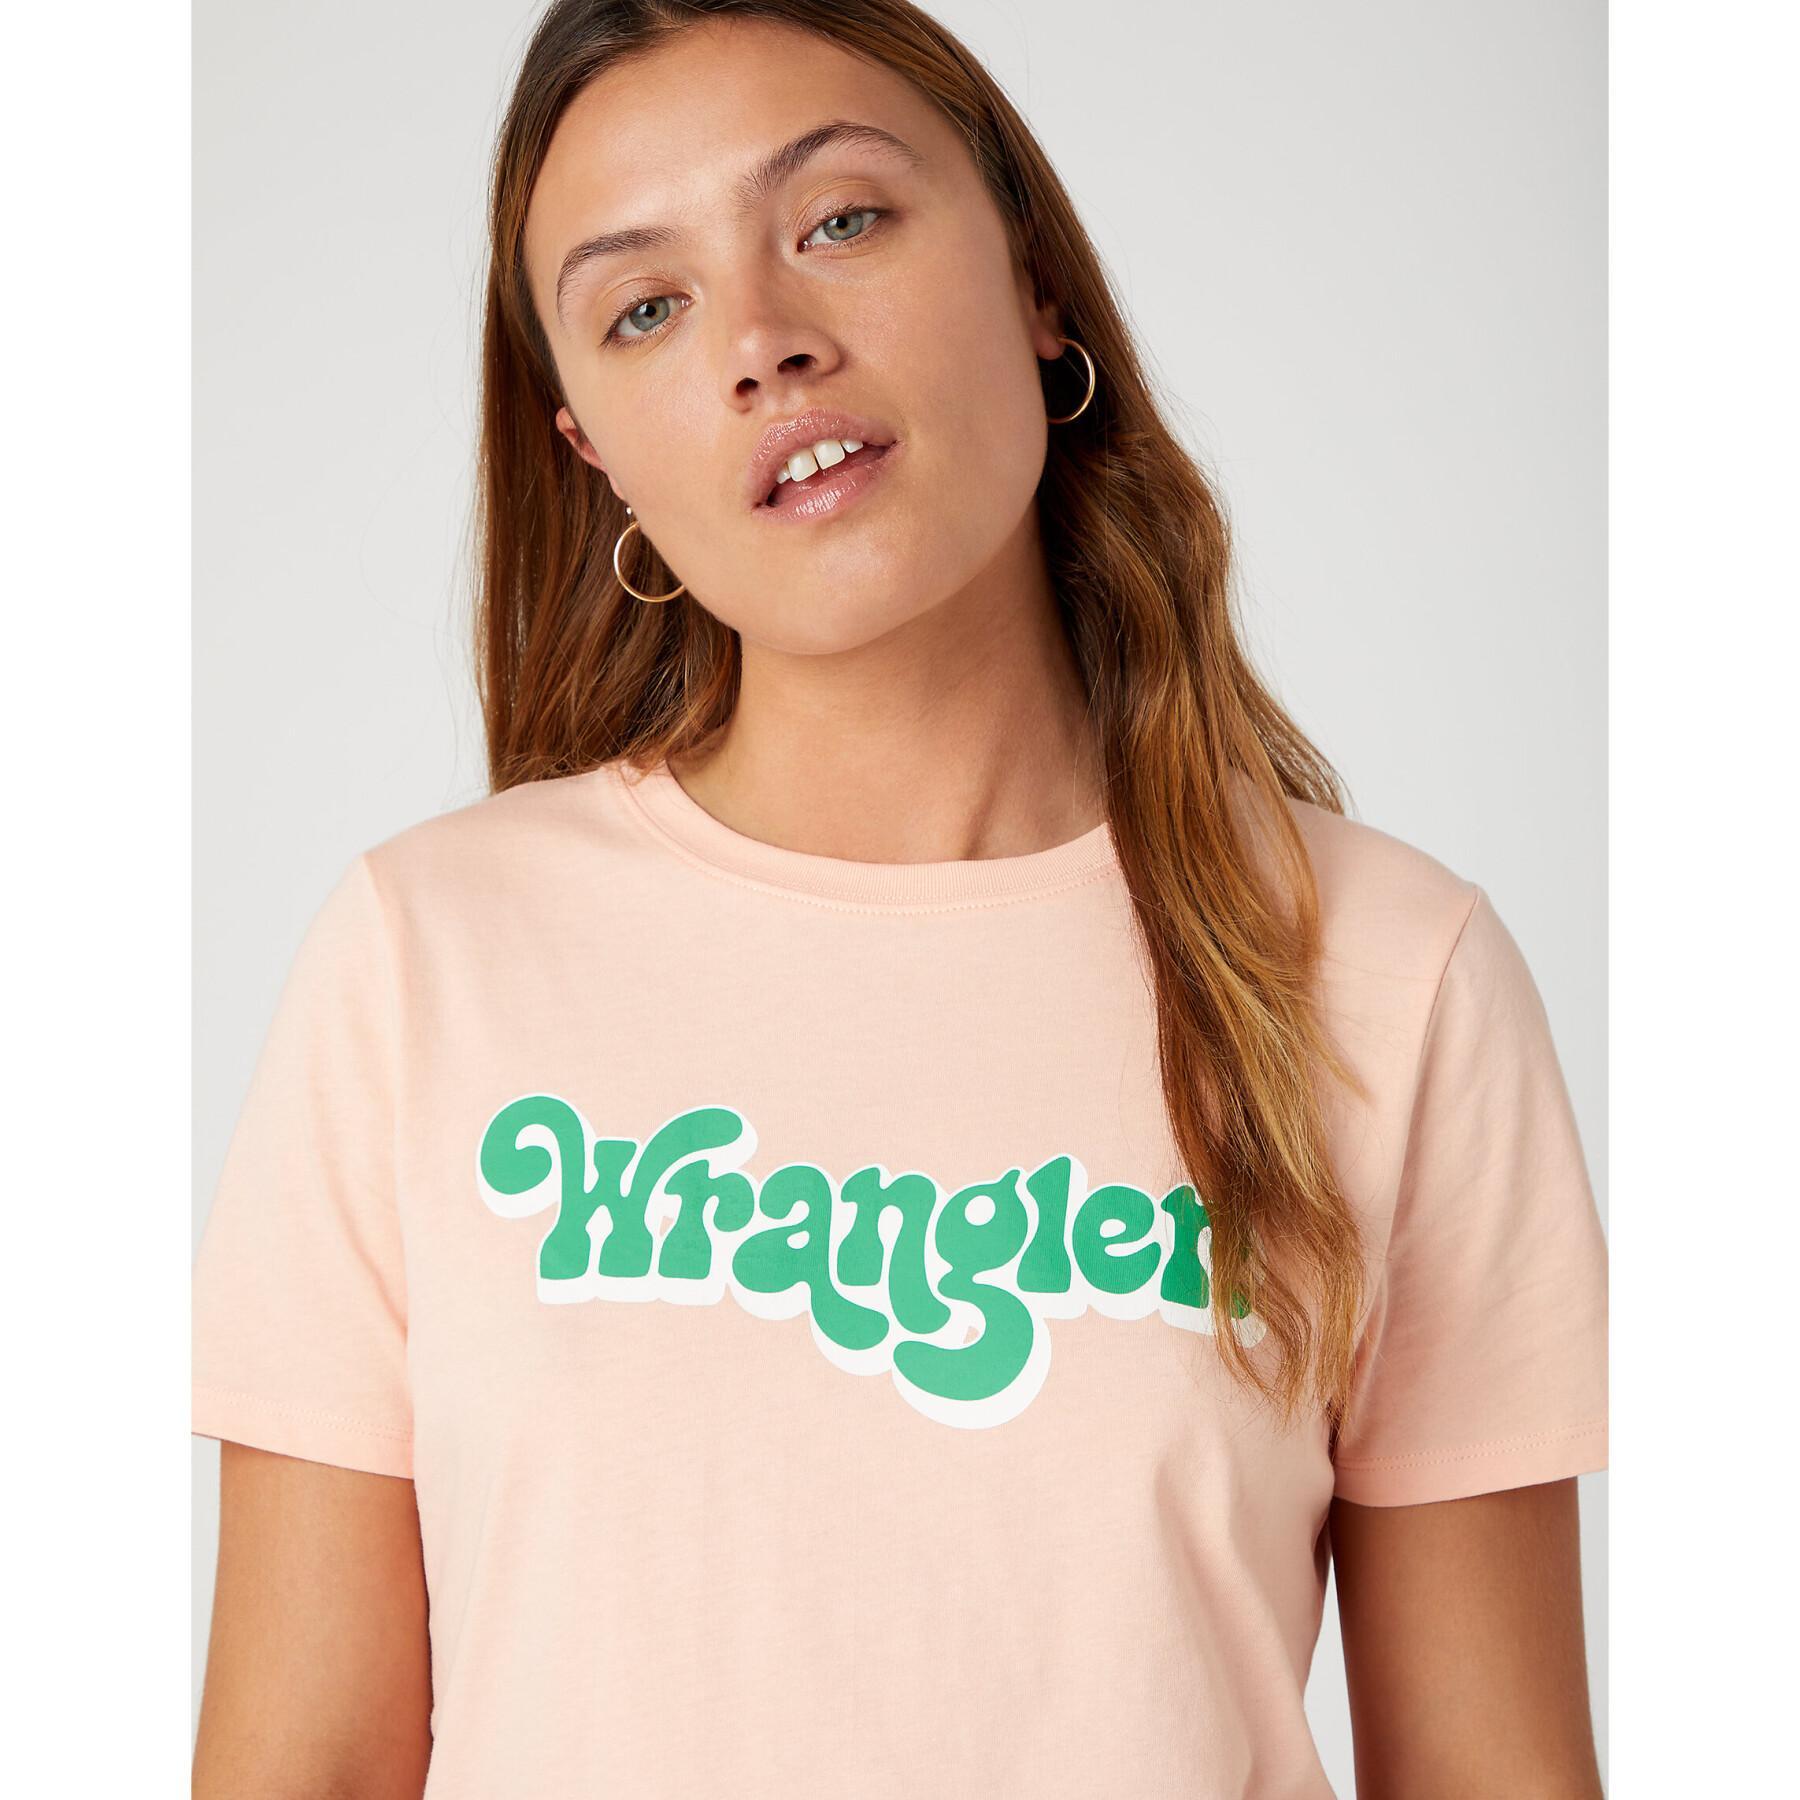 T-Shirt Damen Wrangler Regular